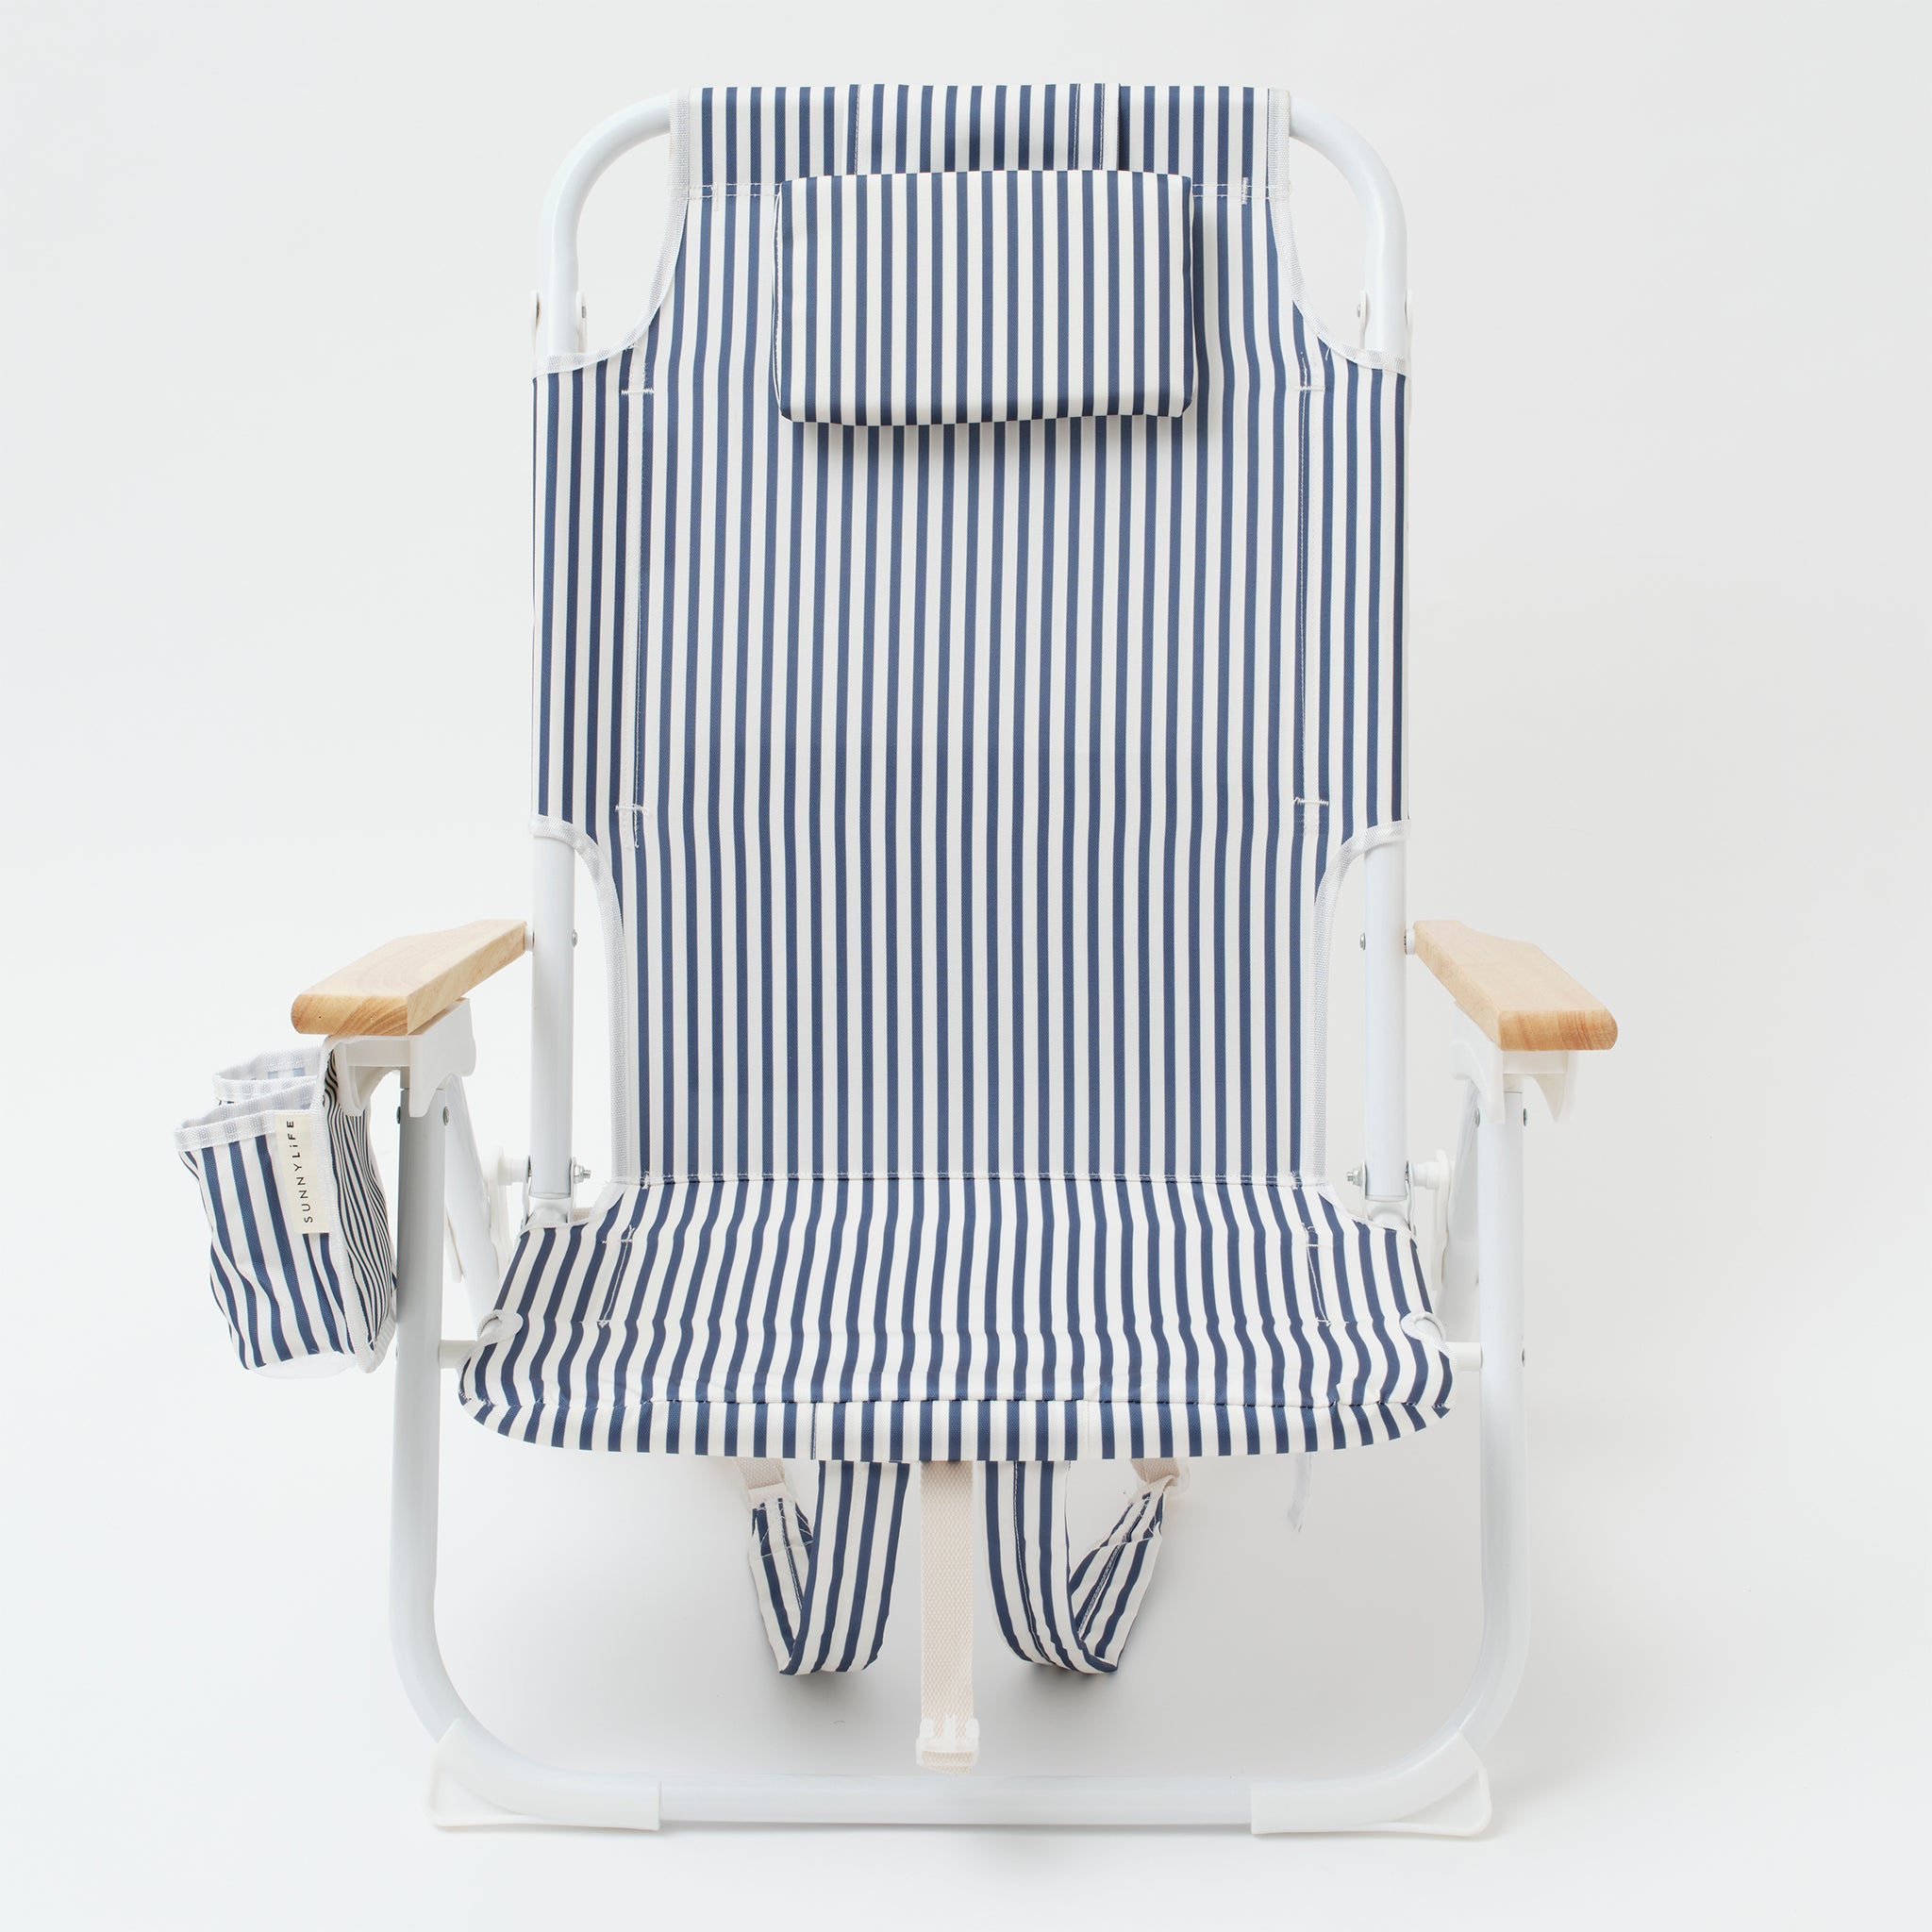 Luxe Beach Chair | The Resort Coastal Blue